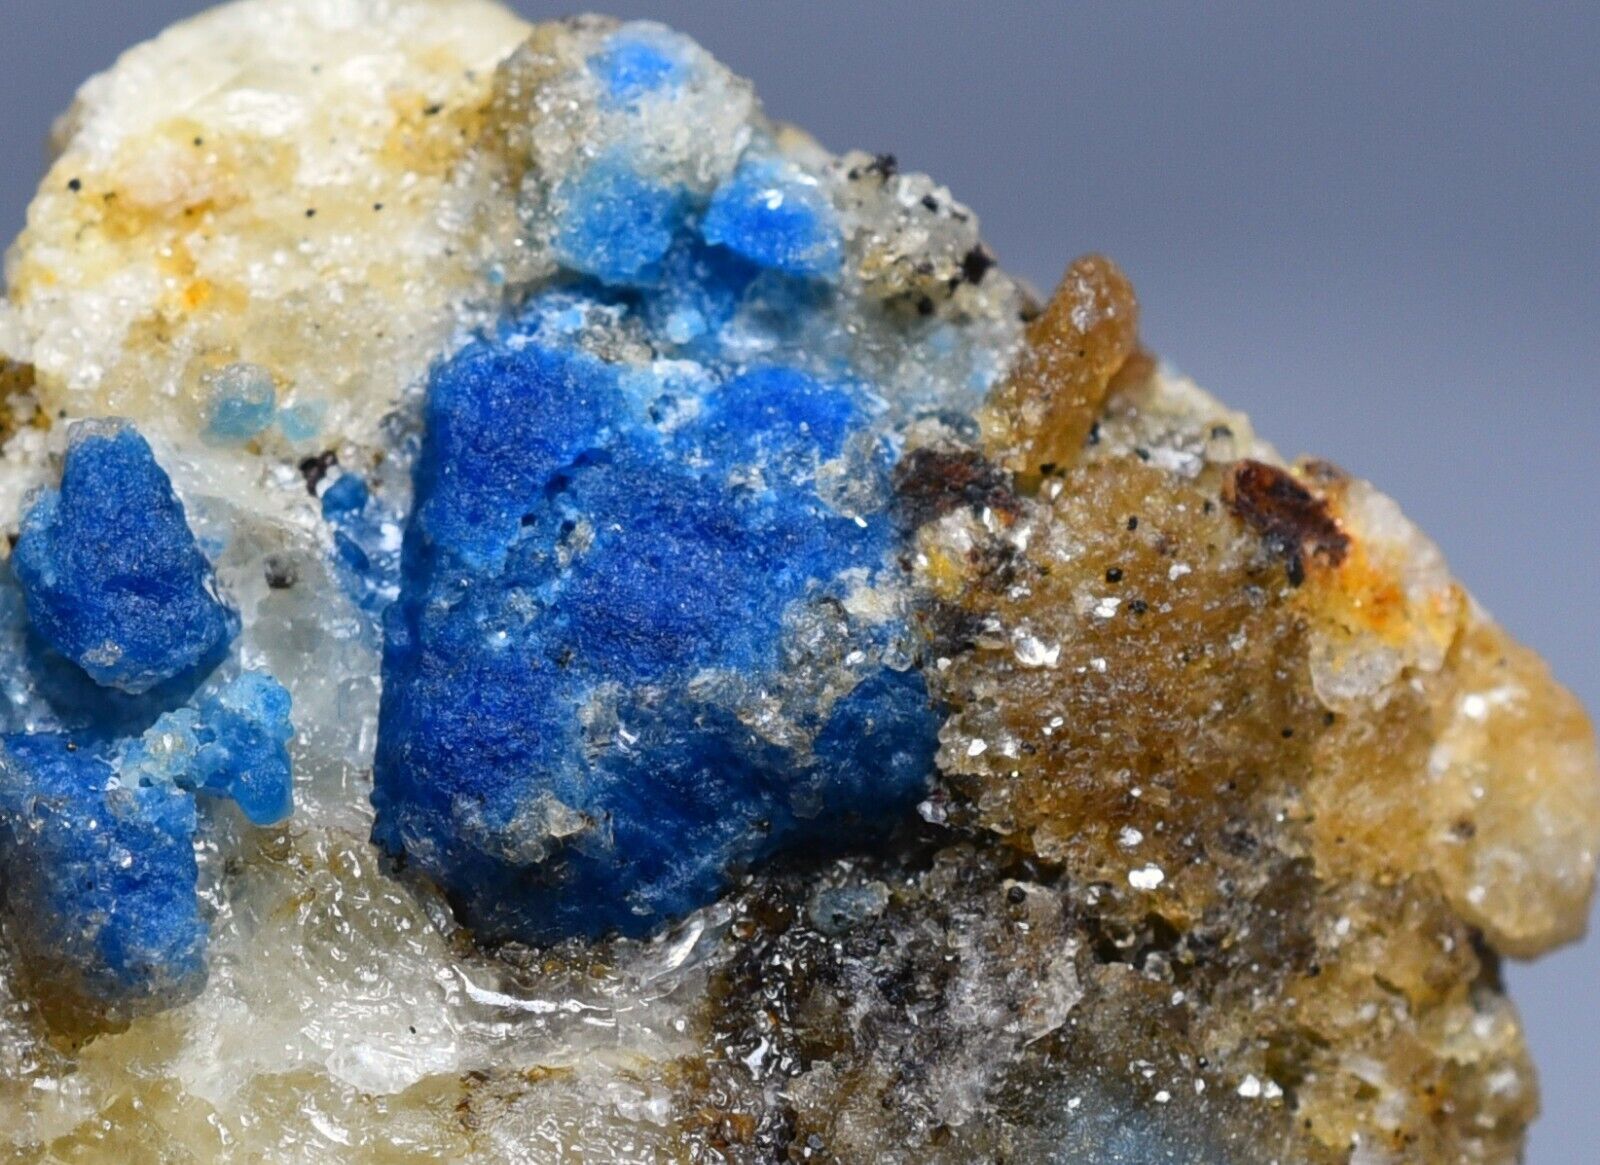 127GM Fluorescent Natural Blue Afghanite & Phlogopite Crystal Specimen @Afghan